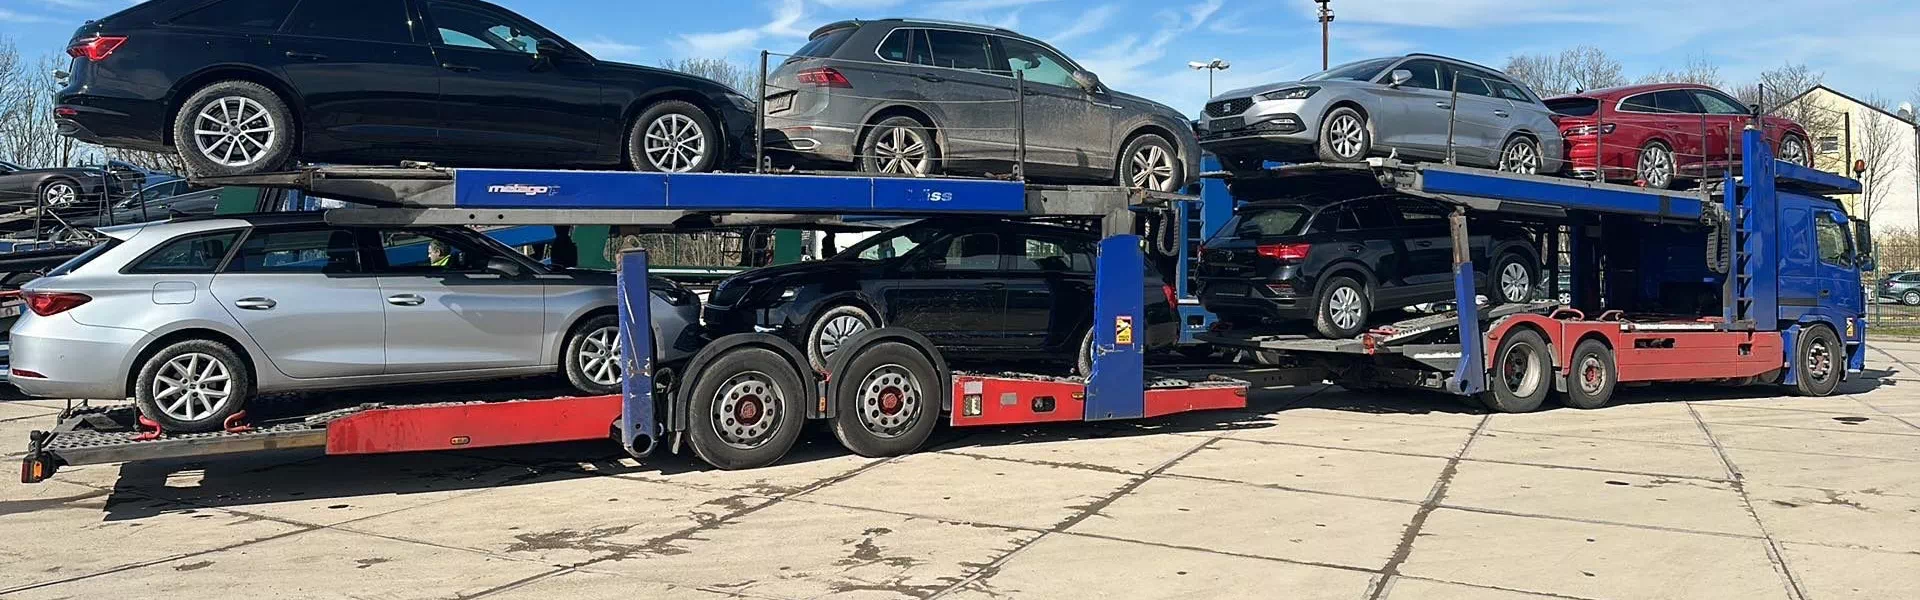 Samochody przygotowane do transportu